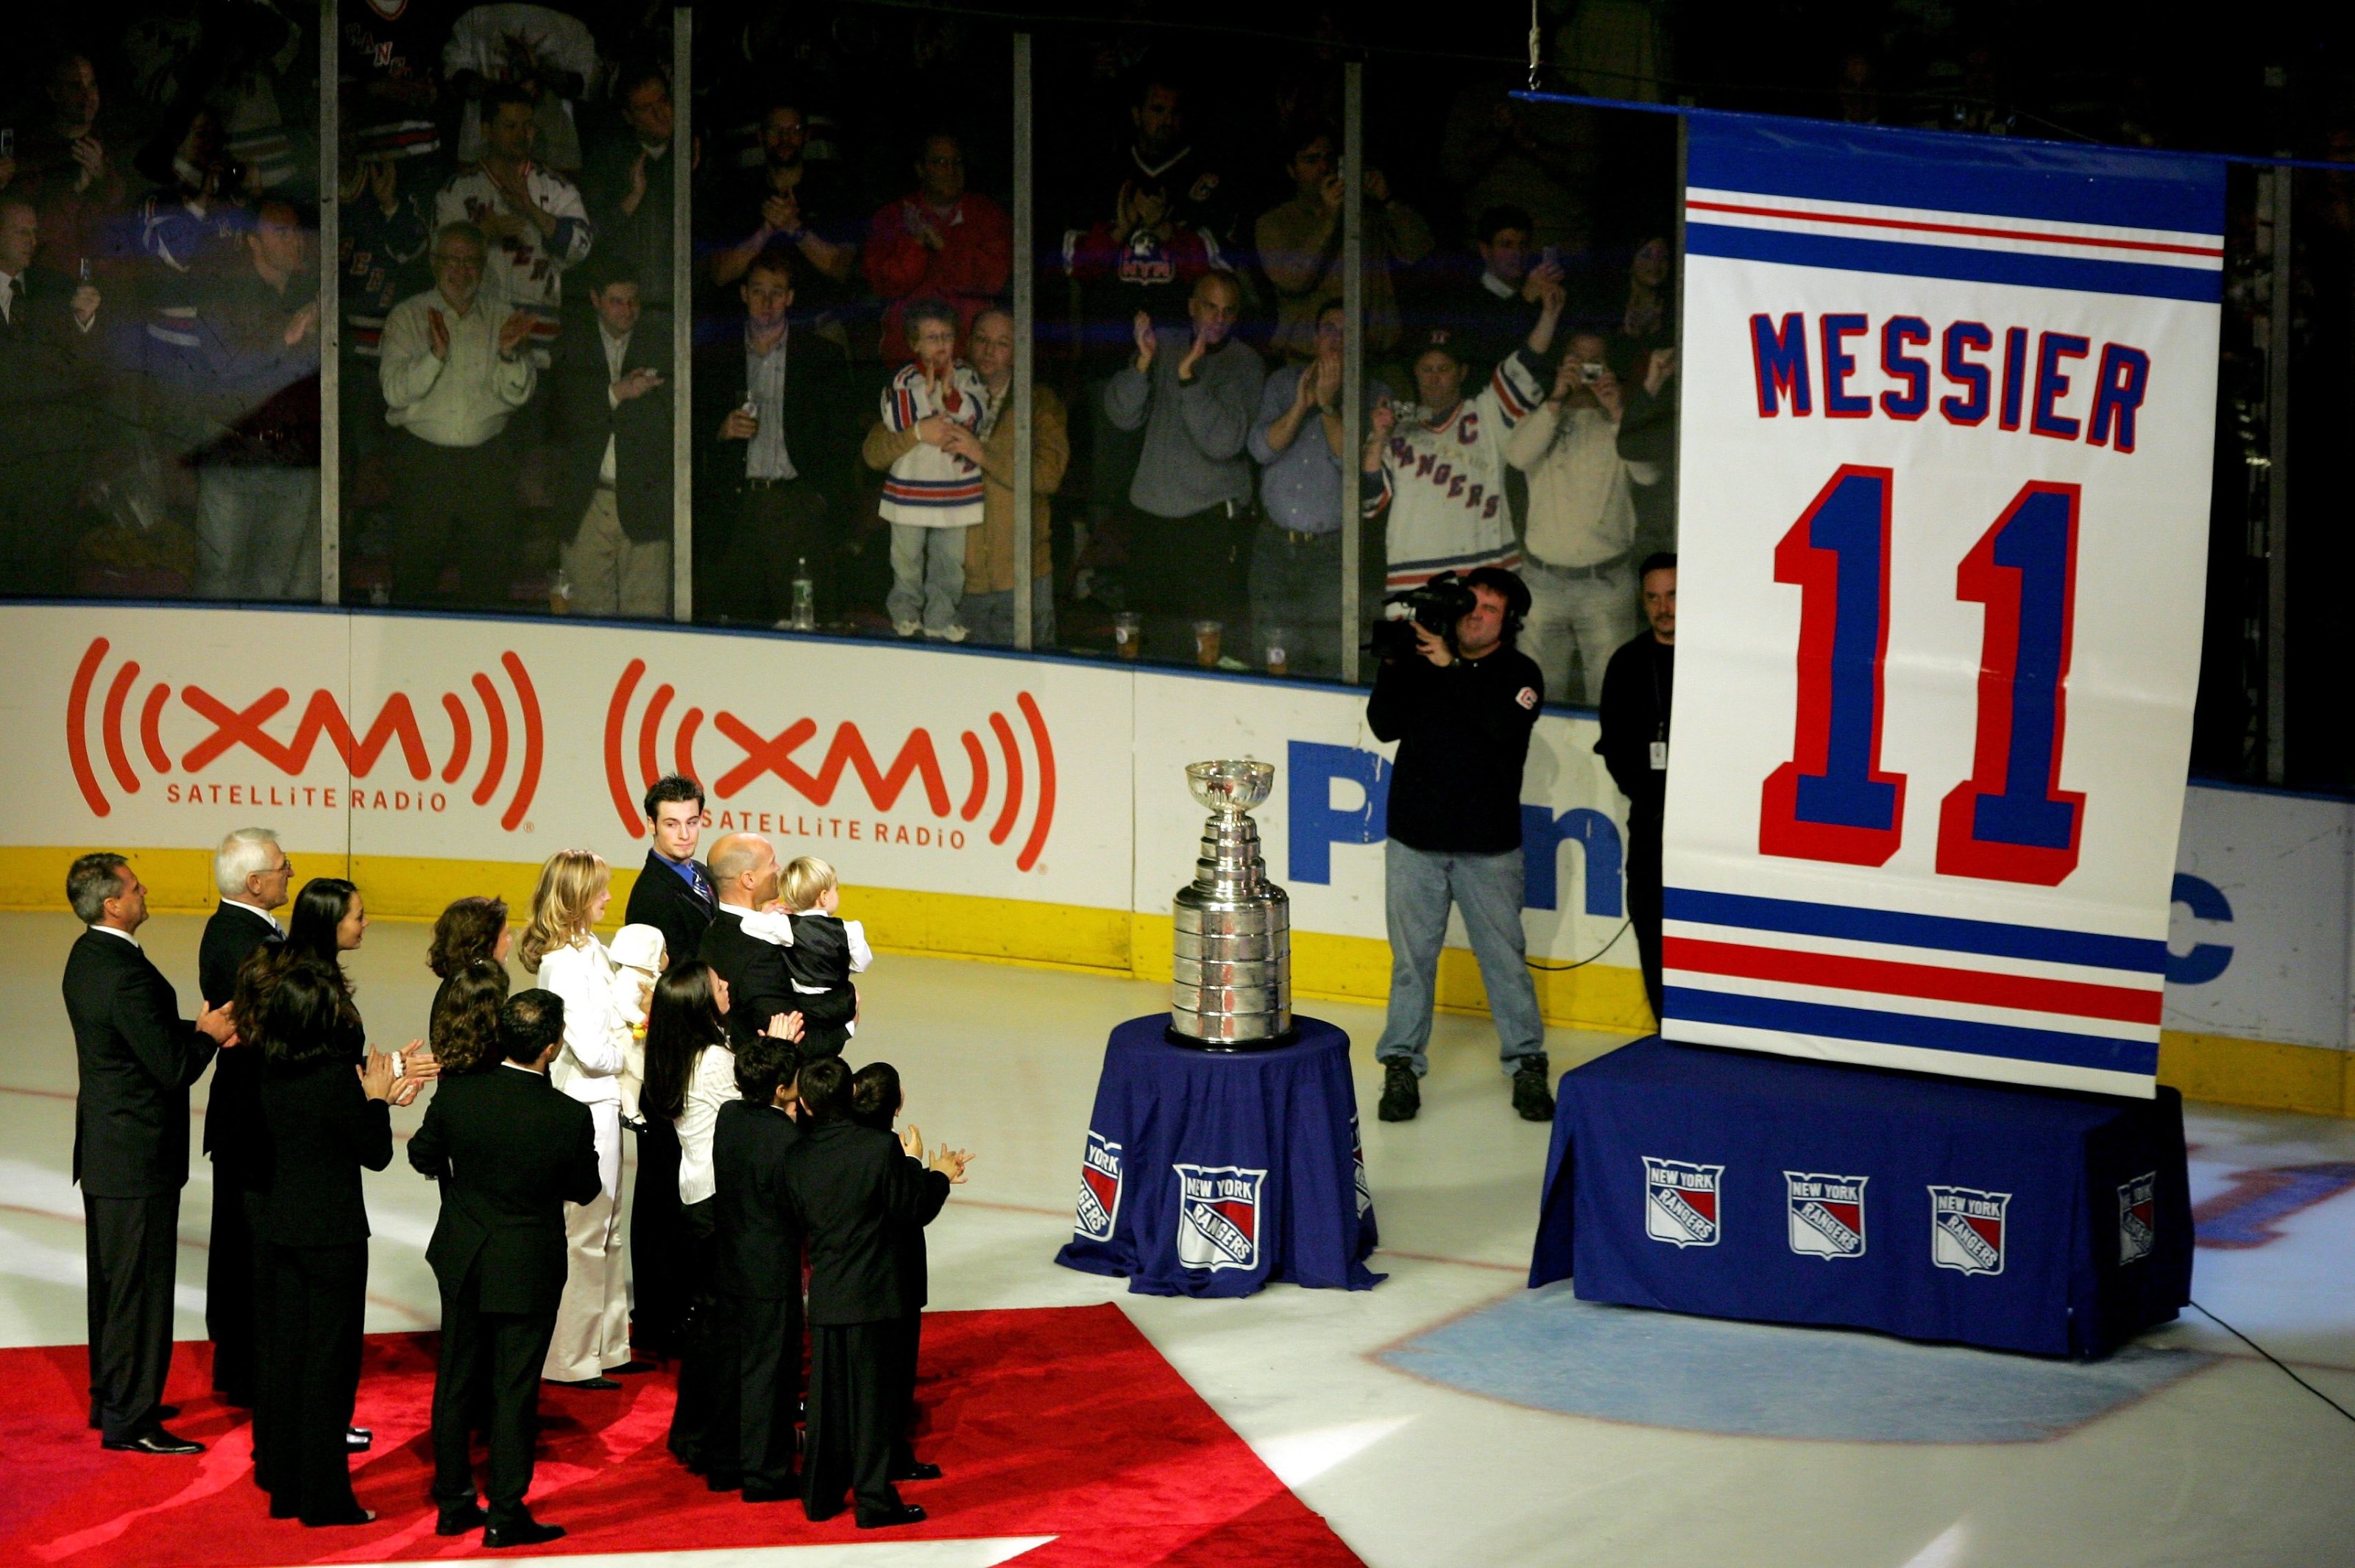 On September 5 in New York Rangers history: Mark Messier's last